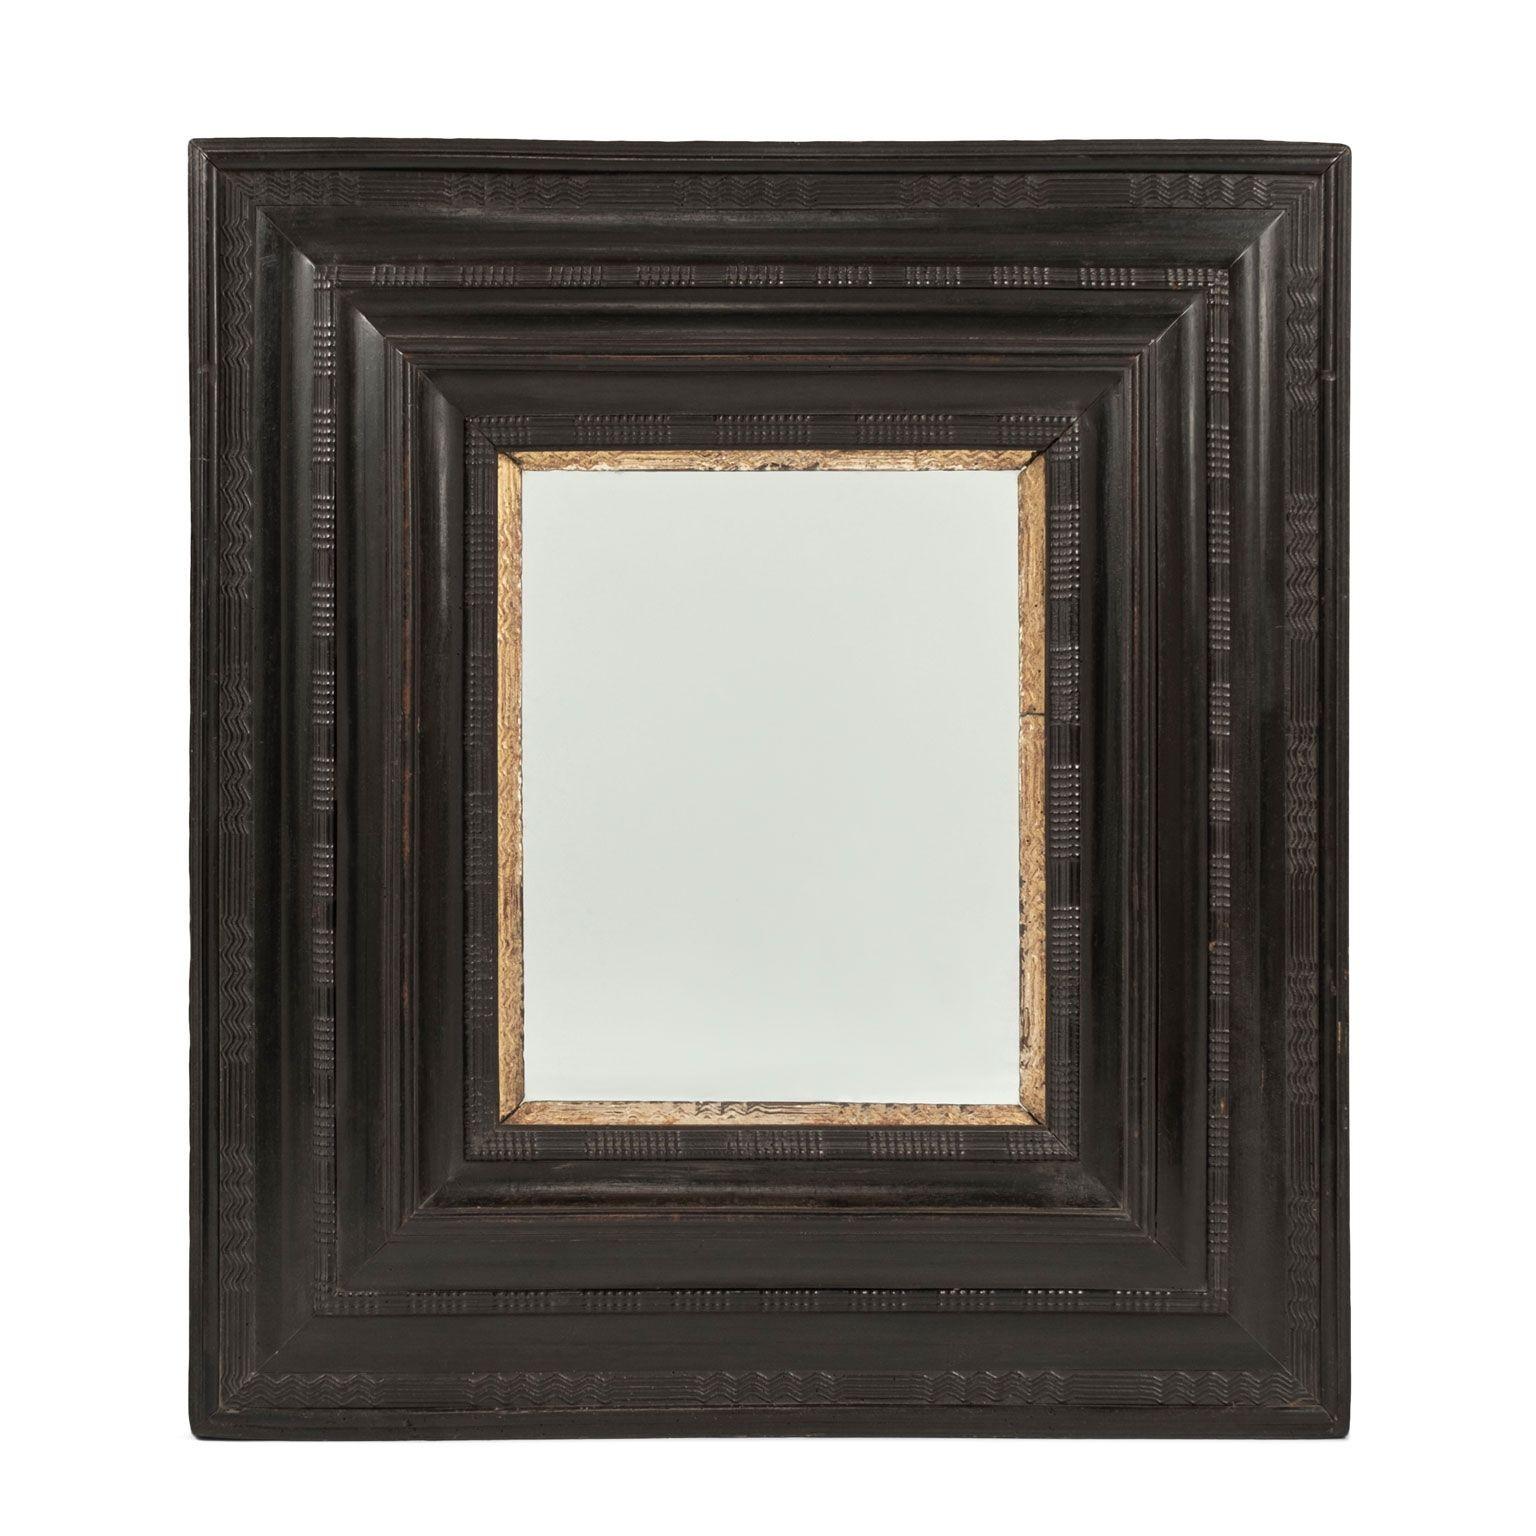 Miroir italien en bois ébonisé et doré daté du milieu du XVIIIe siècle. Cadre ébonisé sculpté à la main avec garniture intérieure en bois doré sculpté. Miroir en verre ancien, mais pas d'origine.